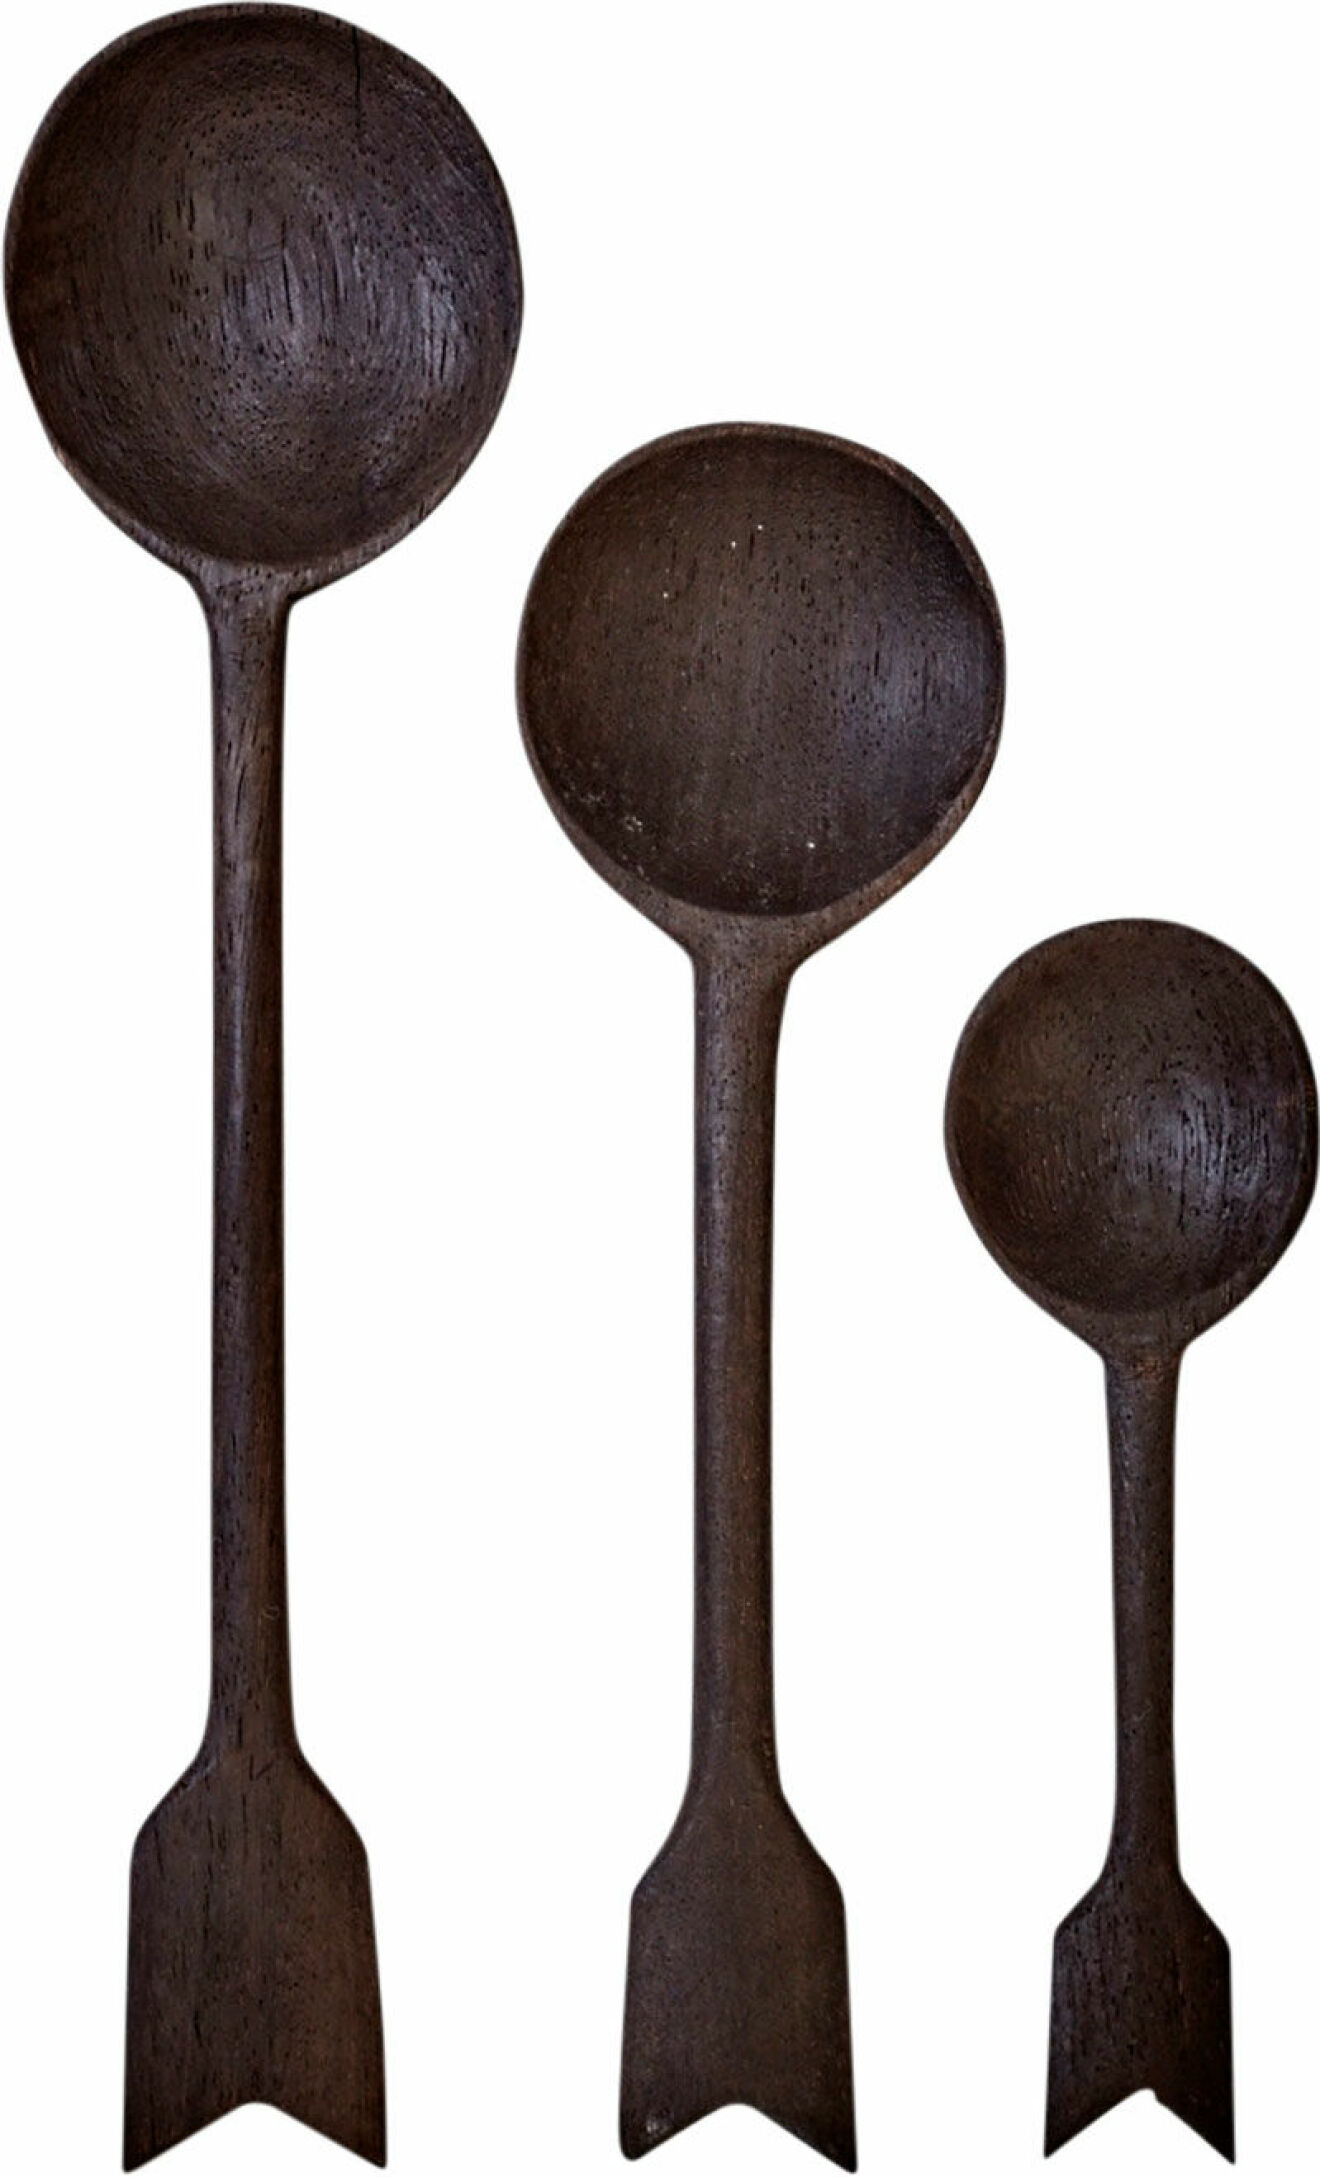 Skedar Arrow  tillverkade av mangoträ, 89:-, liten, 159:-, stor,  Artilleriet.  